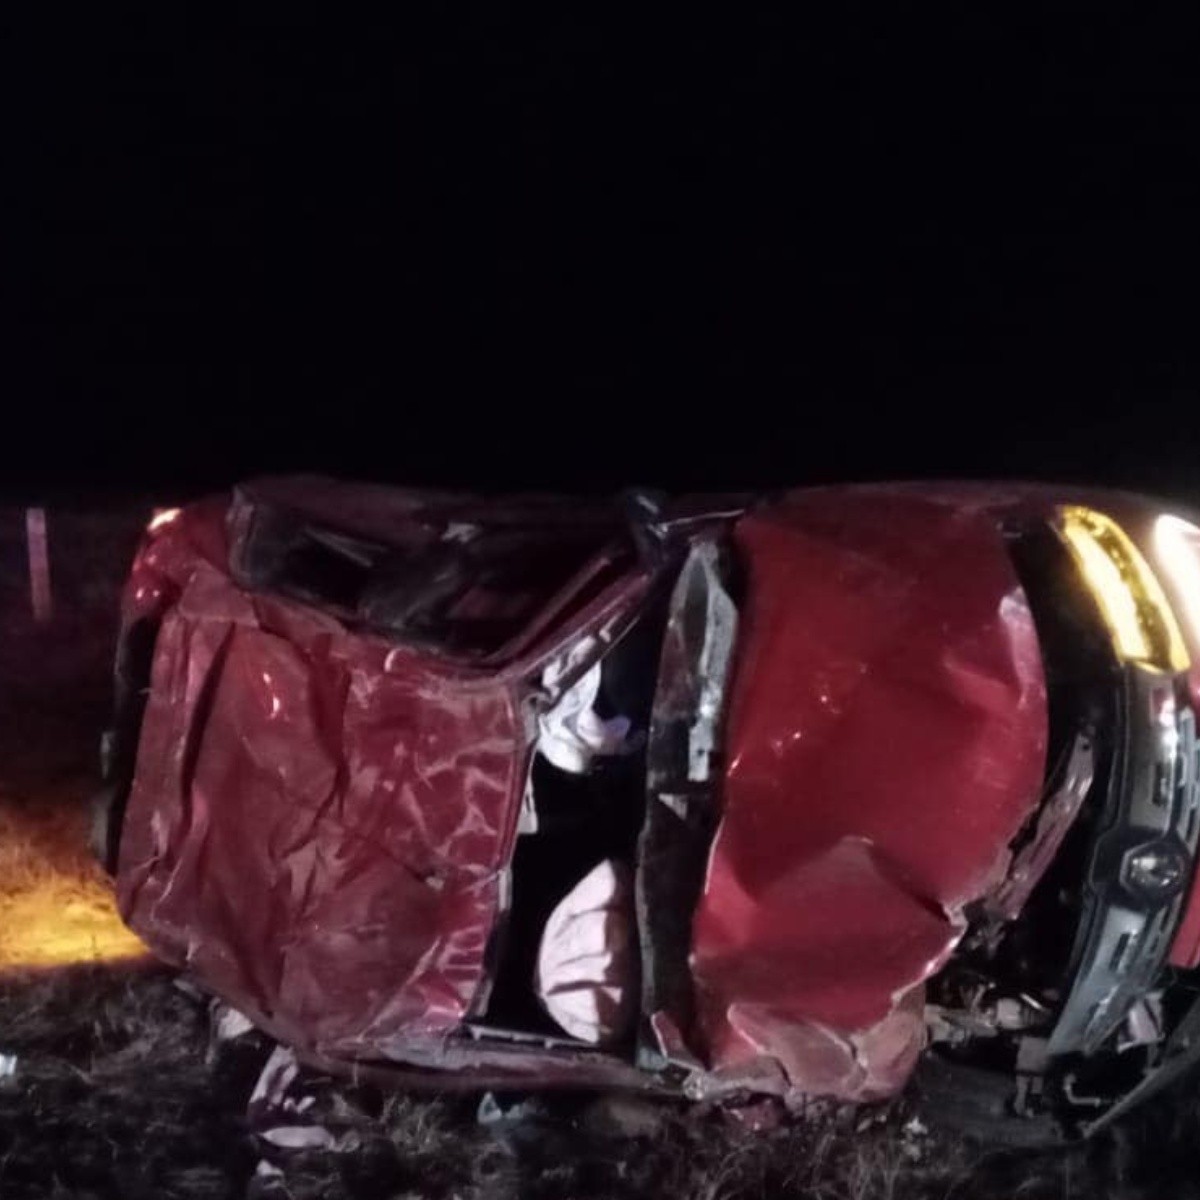 familia sufre accidente en carretera de zacatecas; hay cuatro heridos, dos menores de edad